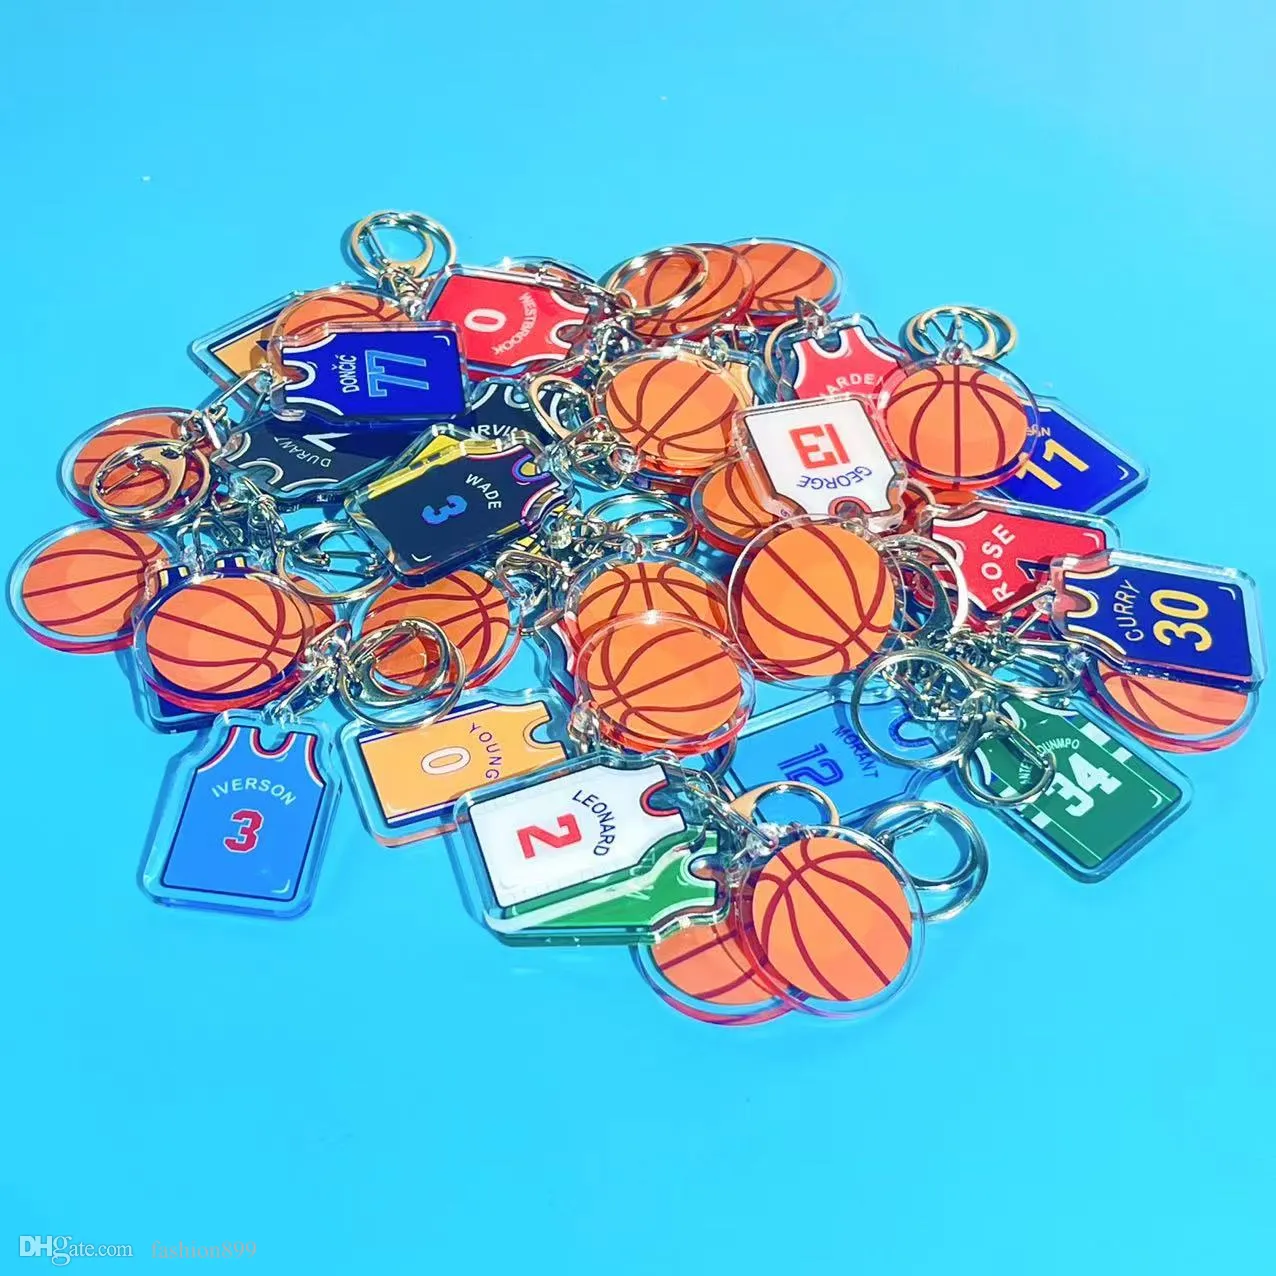 Nouveau imprimé sur maillot forme porte-clés breloques sport porte-clés pour hommes et femmes enfants basket fan bibelot souvenir accessoires cadeau